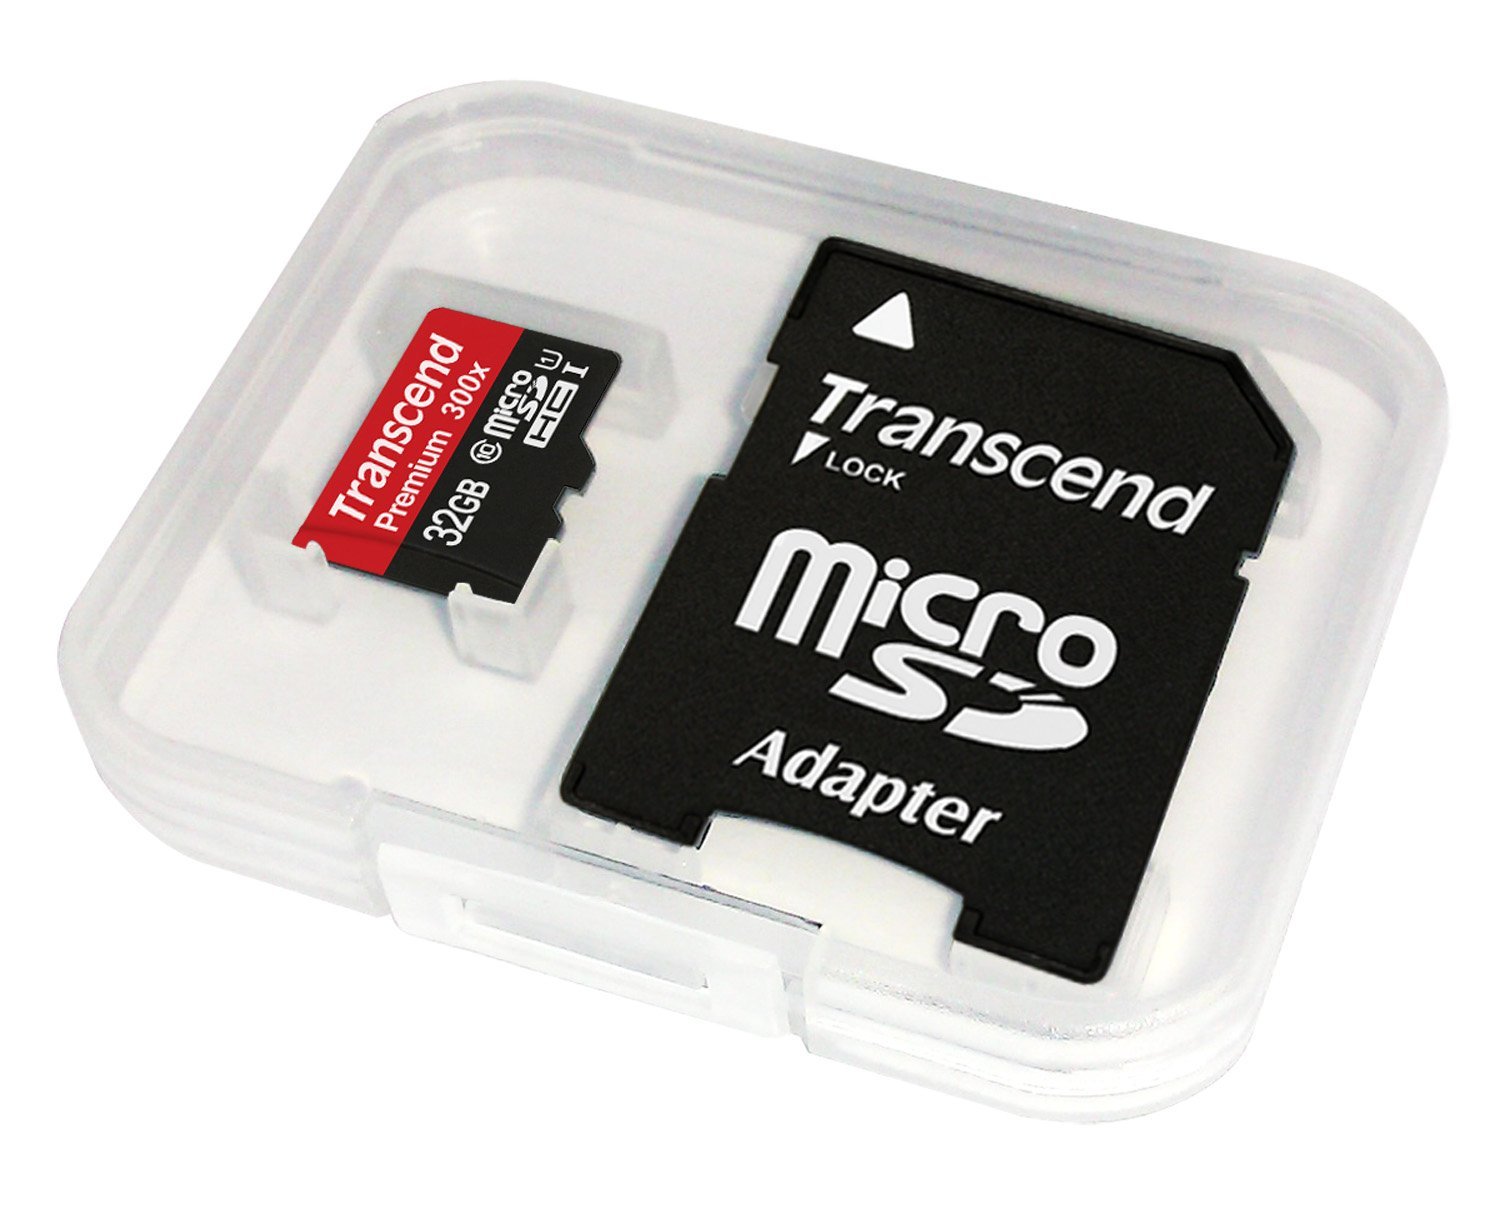 Микро память для видеорегистратора. Флешка 64 ГБ микро SD. Transcend 128gb MICROSD Transcend + SD адаптер ( ). Трансенд 128 ГБ флешка Трансенд микро СД. Карта памяти Transcend MICROSDXC 64gb 300x.